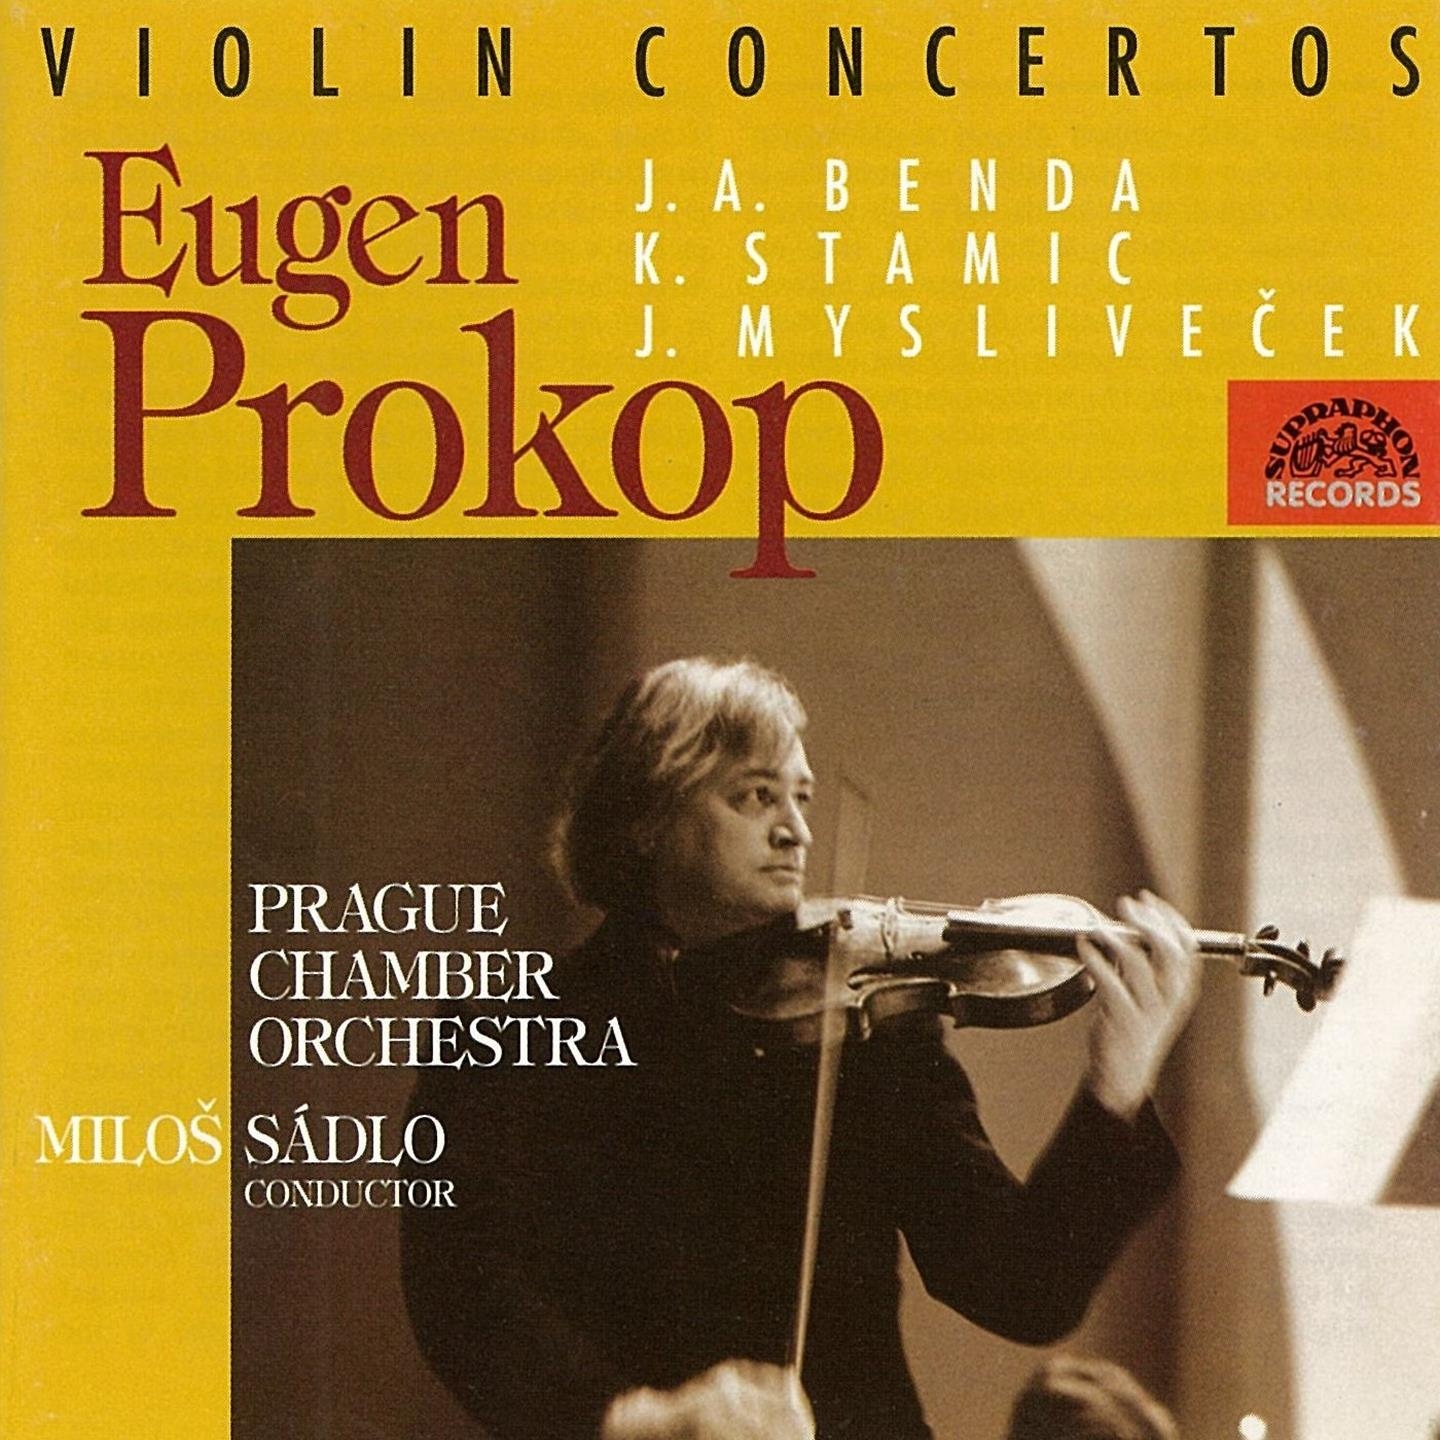 Concerto for Violin and Orchestra No. 4 in D-Sharp Major, .: I. Allegro maestoso